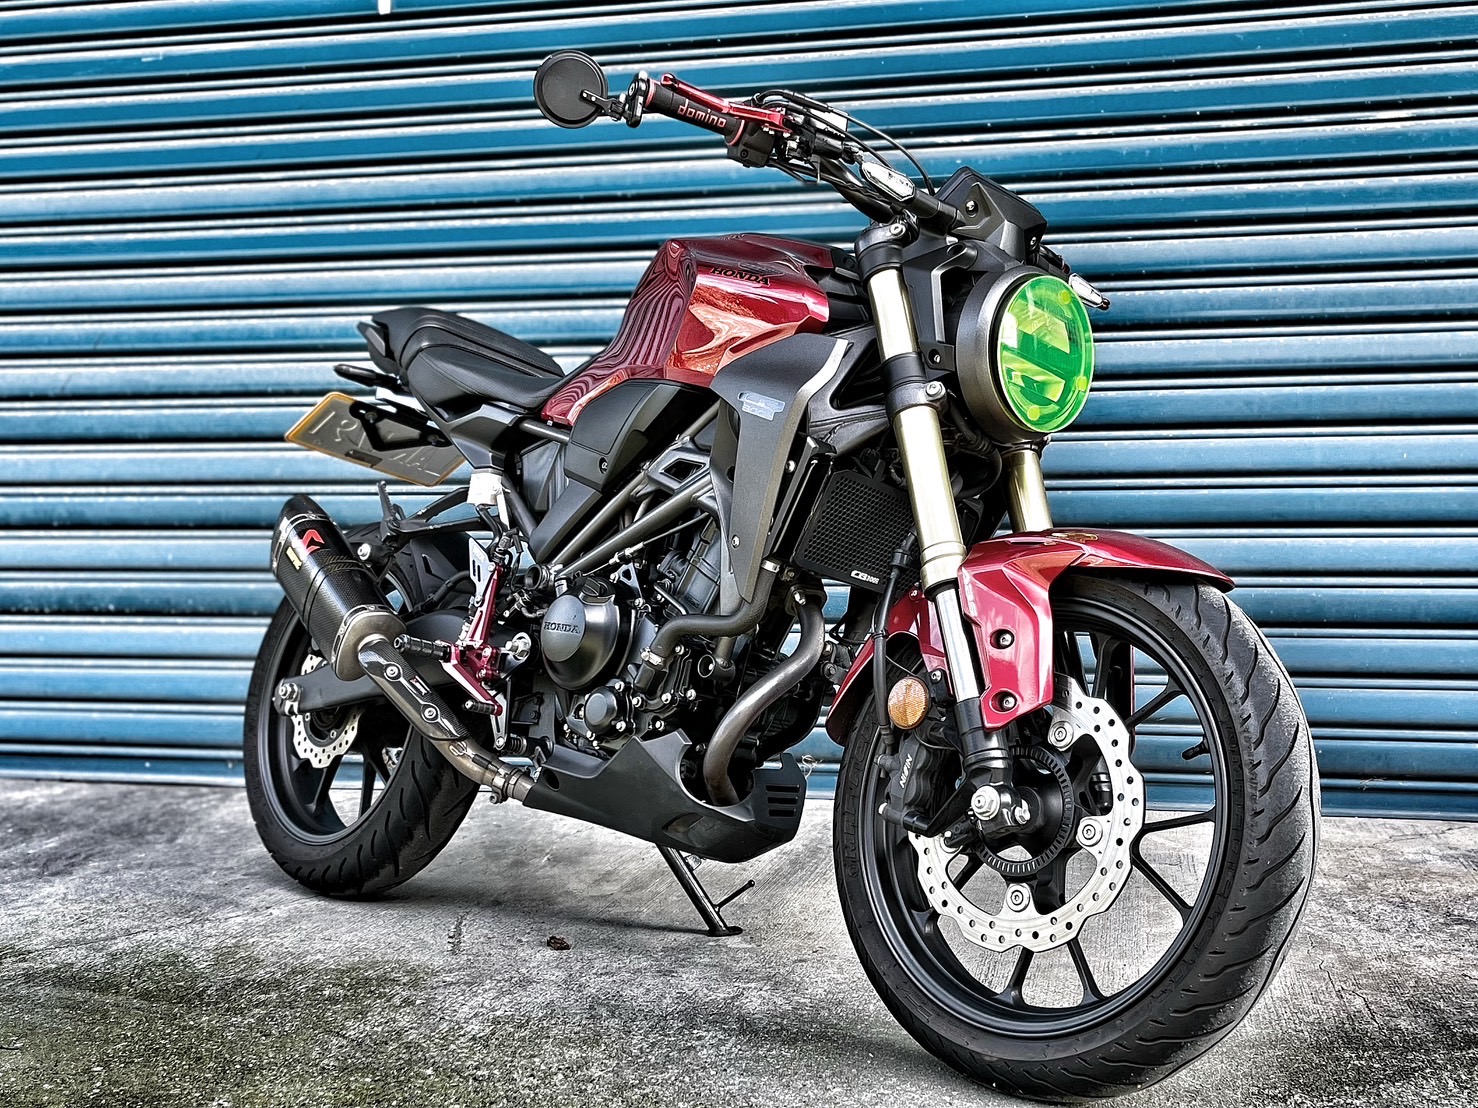 【小資族二手重機買賣】HONDA CB300R - 「Webike-摩托車市」 碳蠍管 WH!Z腳踏 視覺改裝 無摔車無事故 小資族二手重機買賣